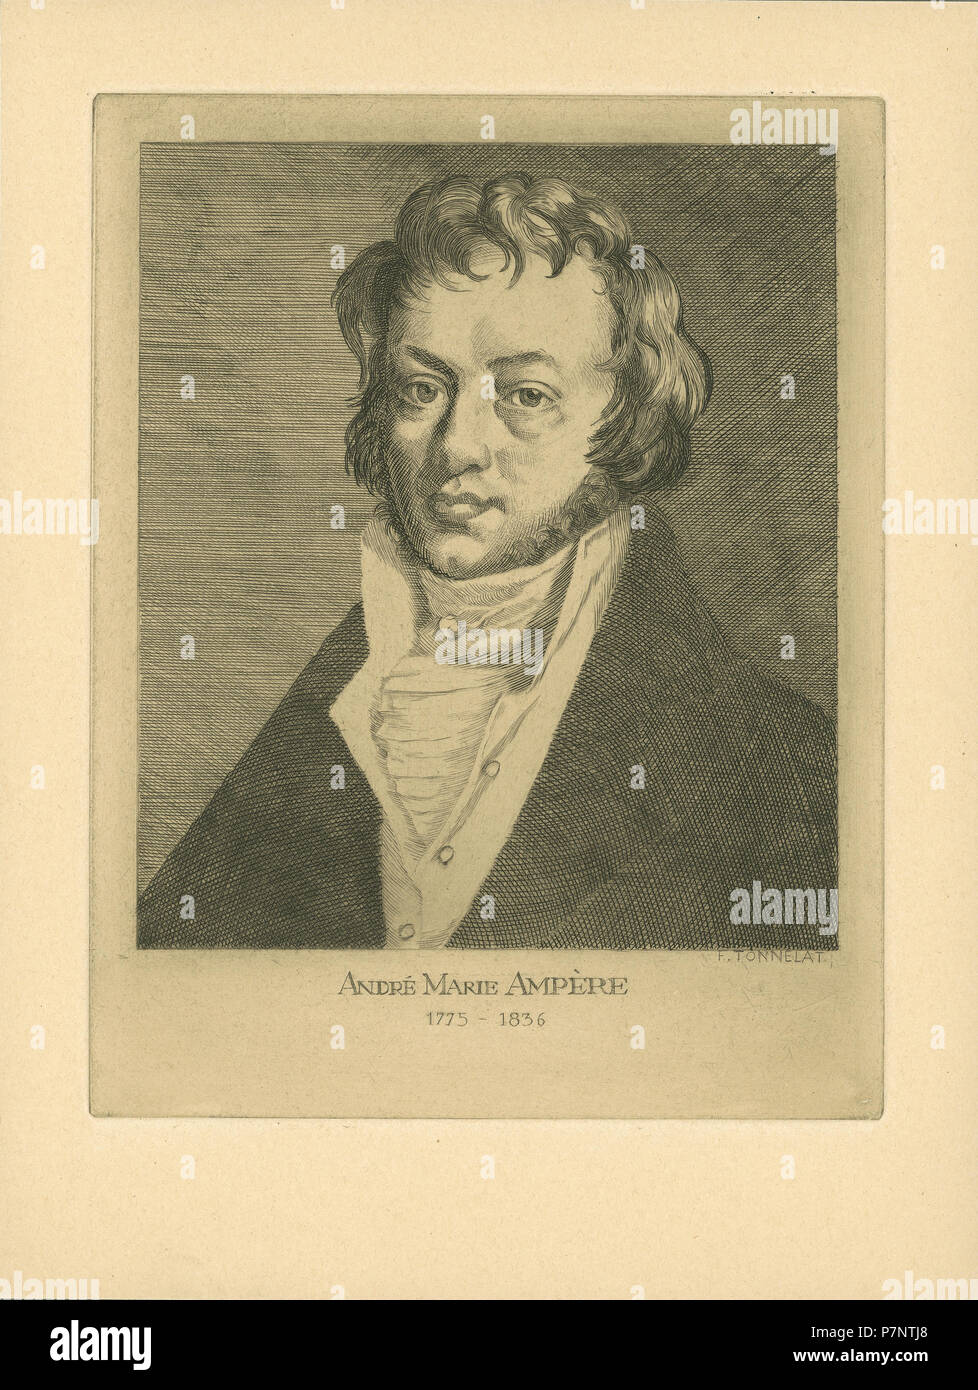 148 ETH-BIB-Ampère, André-Marie (1775-1836)-Portrait-Portr 00949 Stock Photo